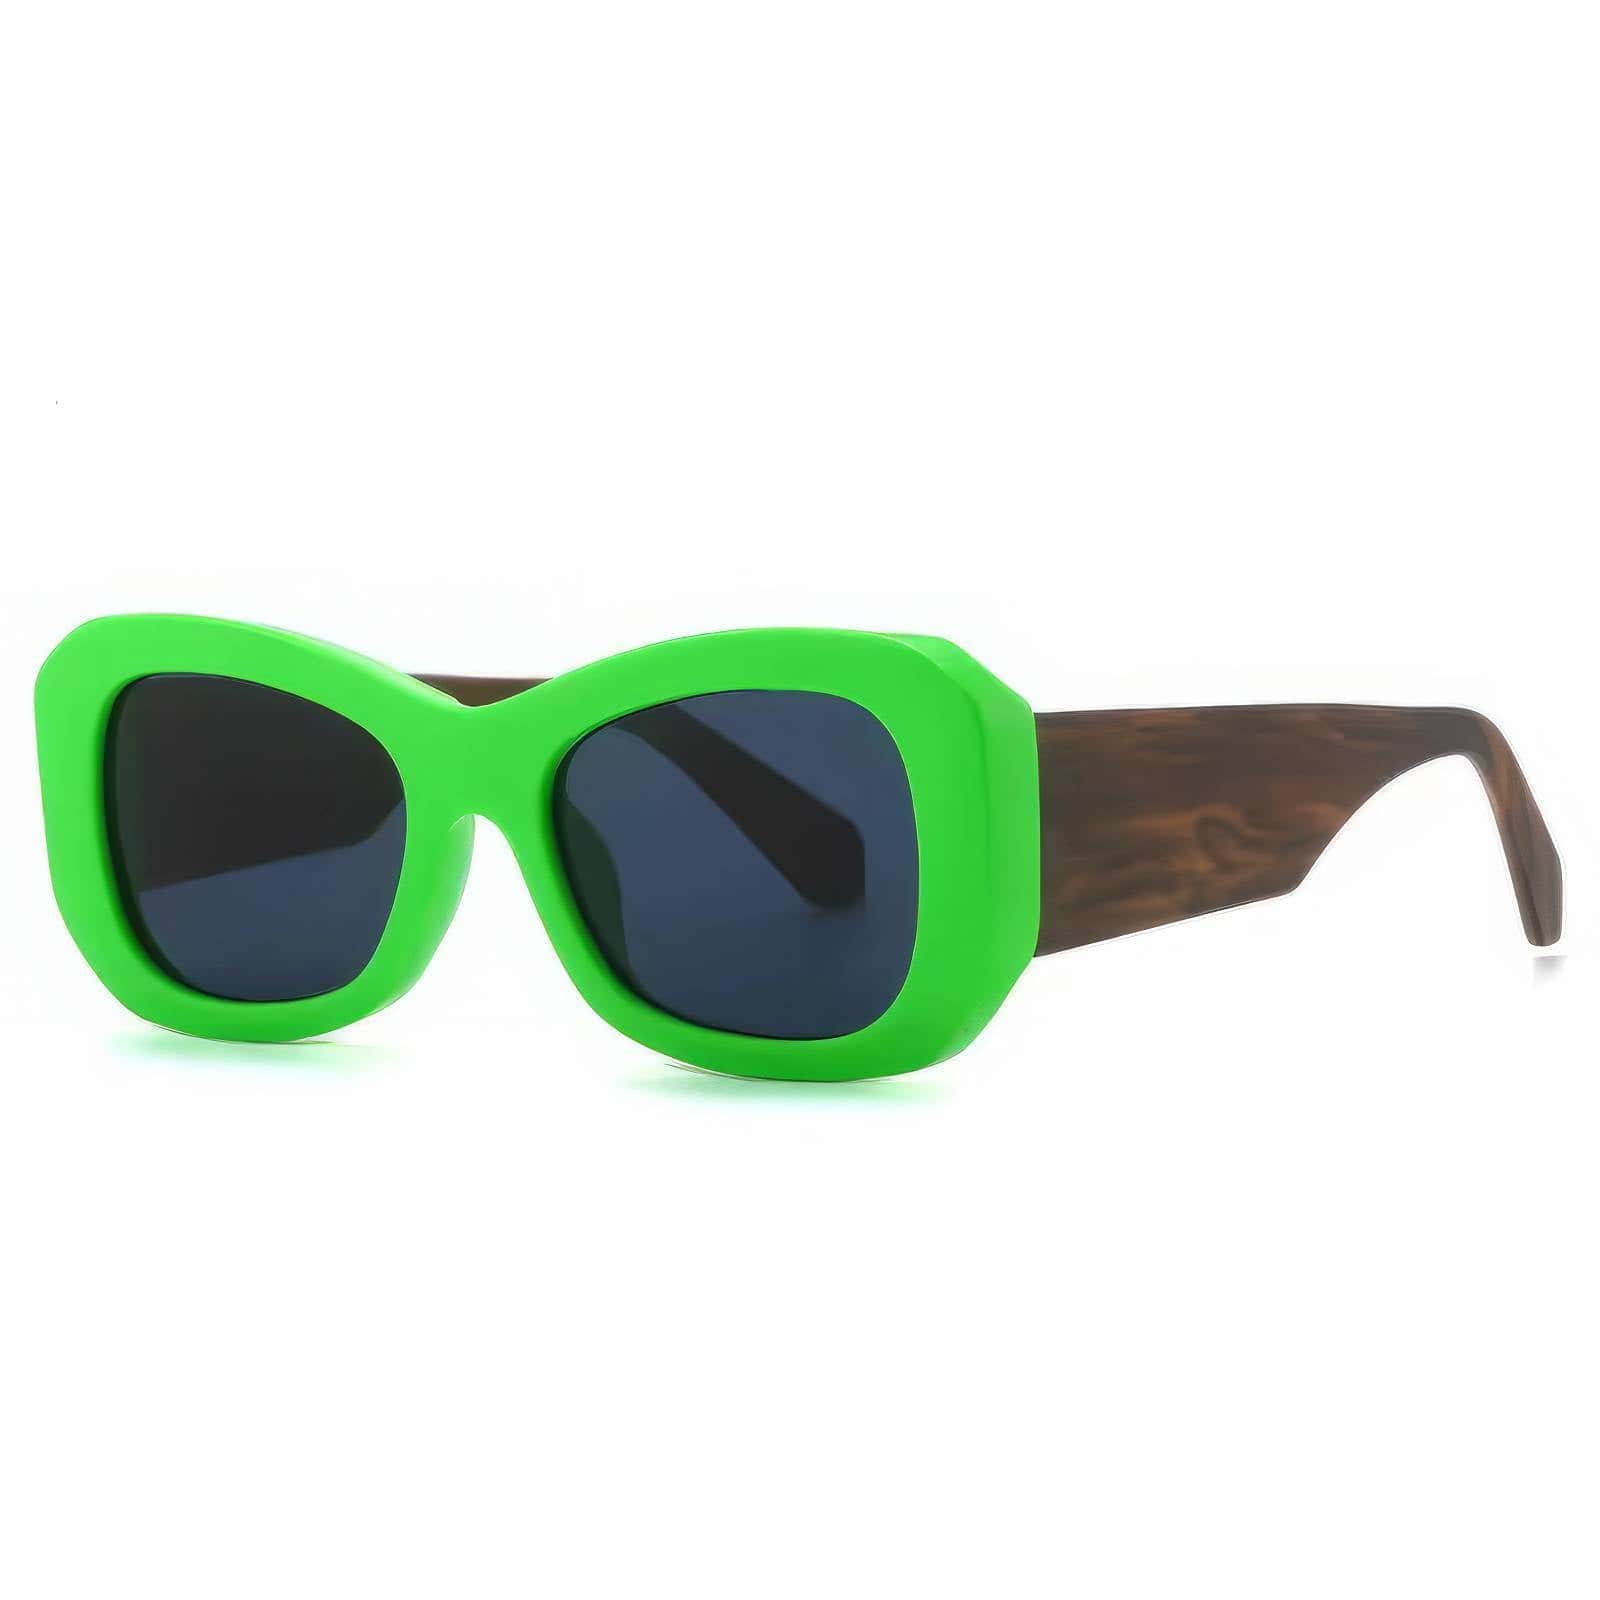 Funky Trending Square Sunglasses Green/Gray / Resin